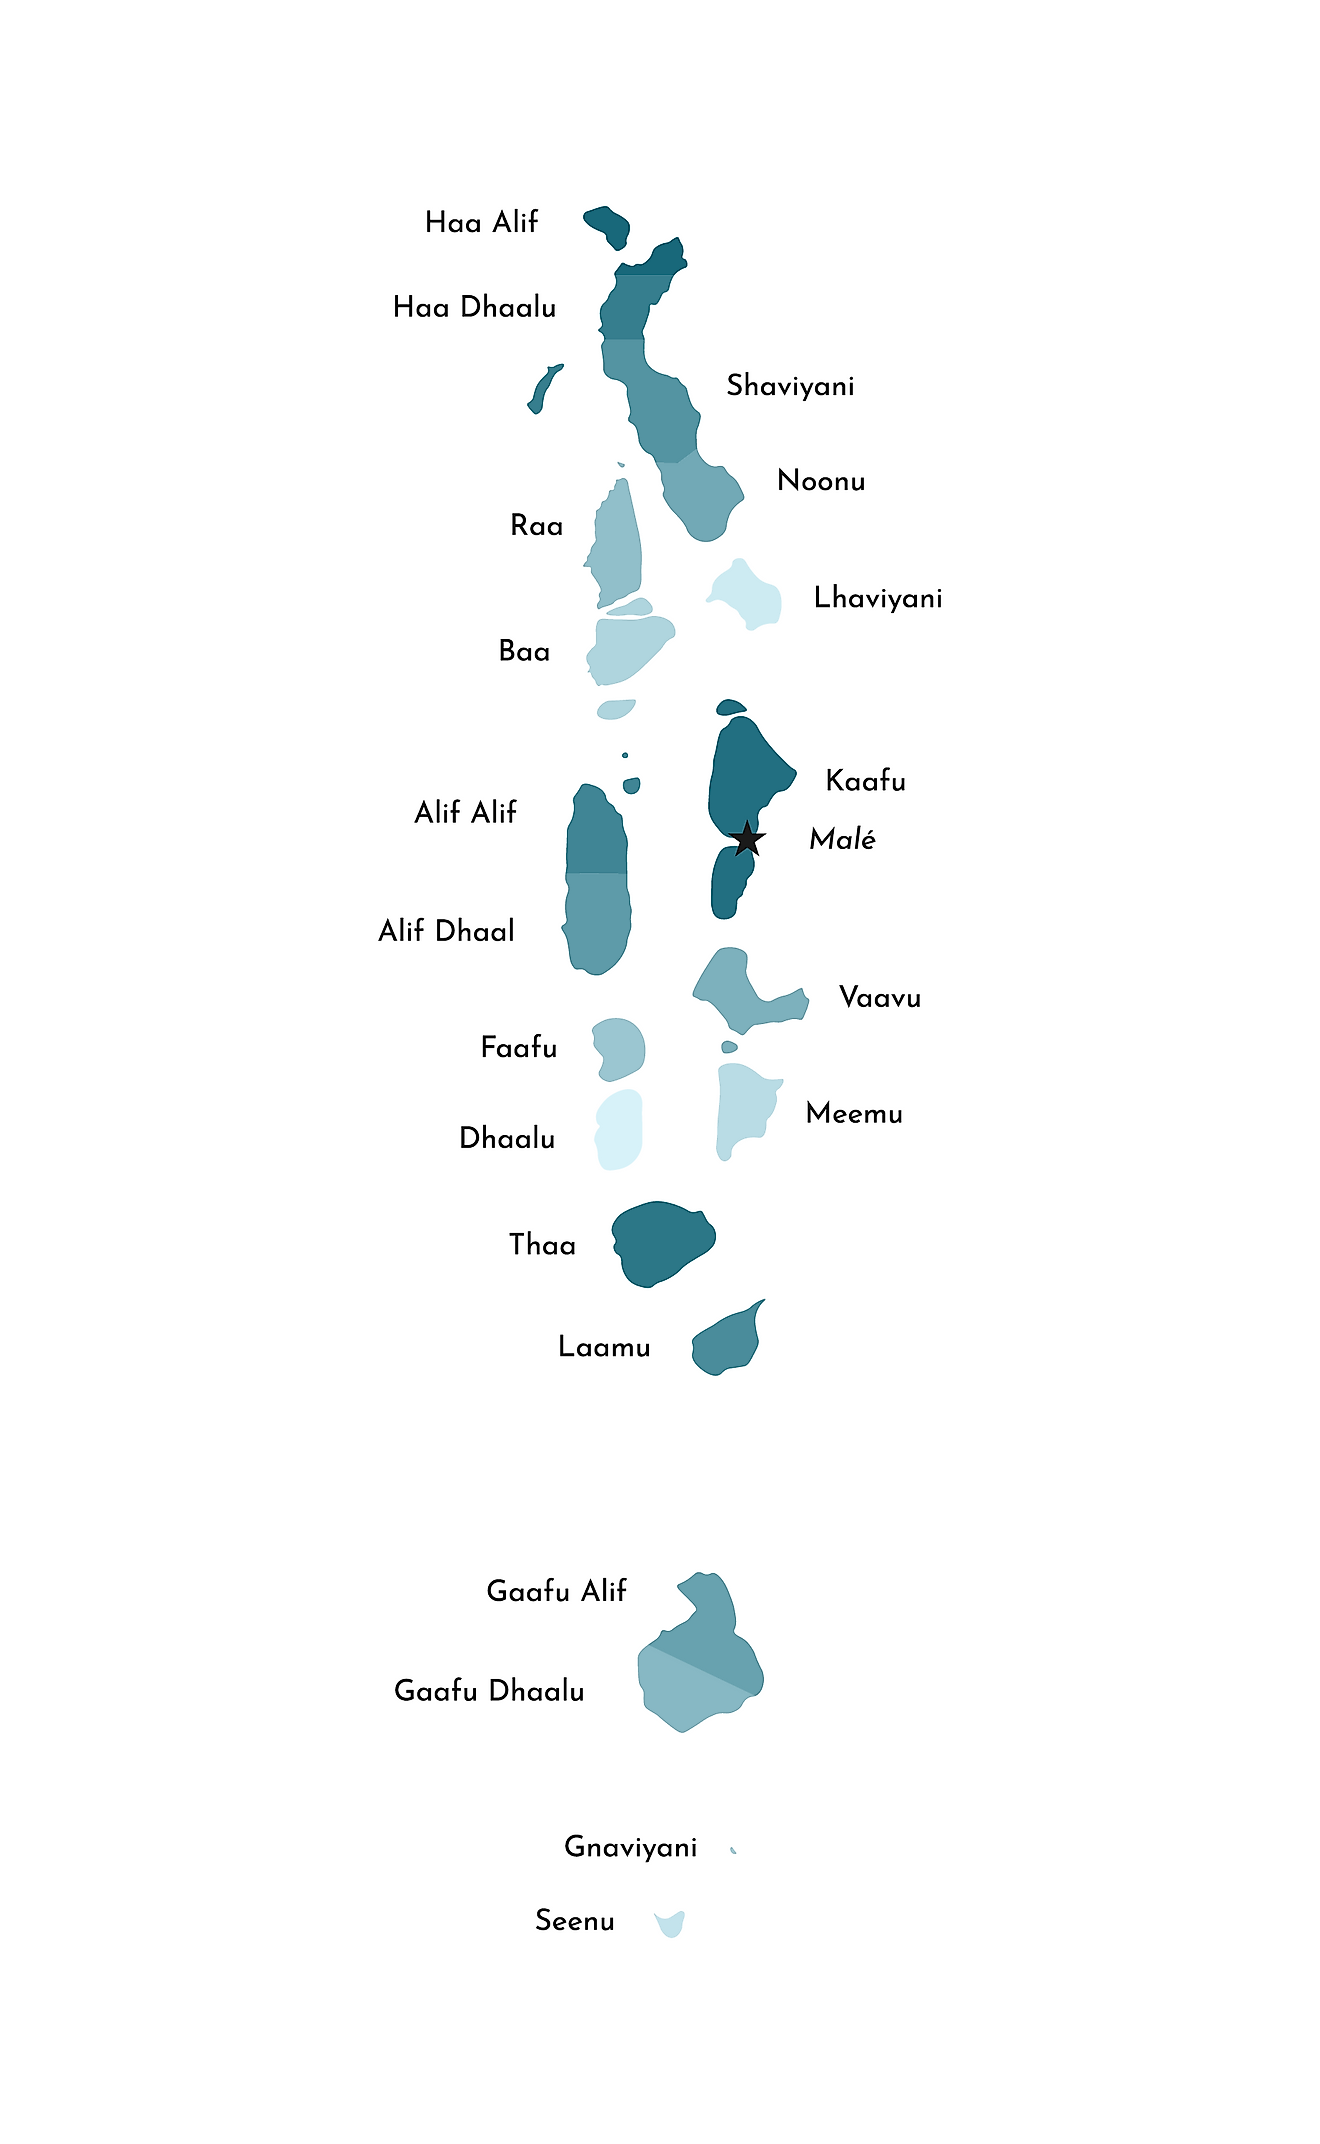 El Mapa Político de Maldivas mostrando sus 21 atolones.